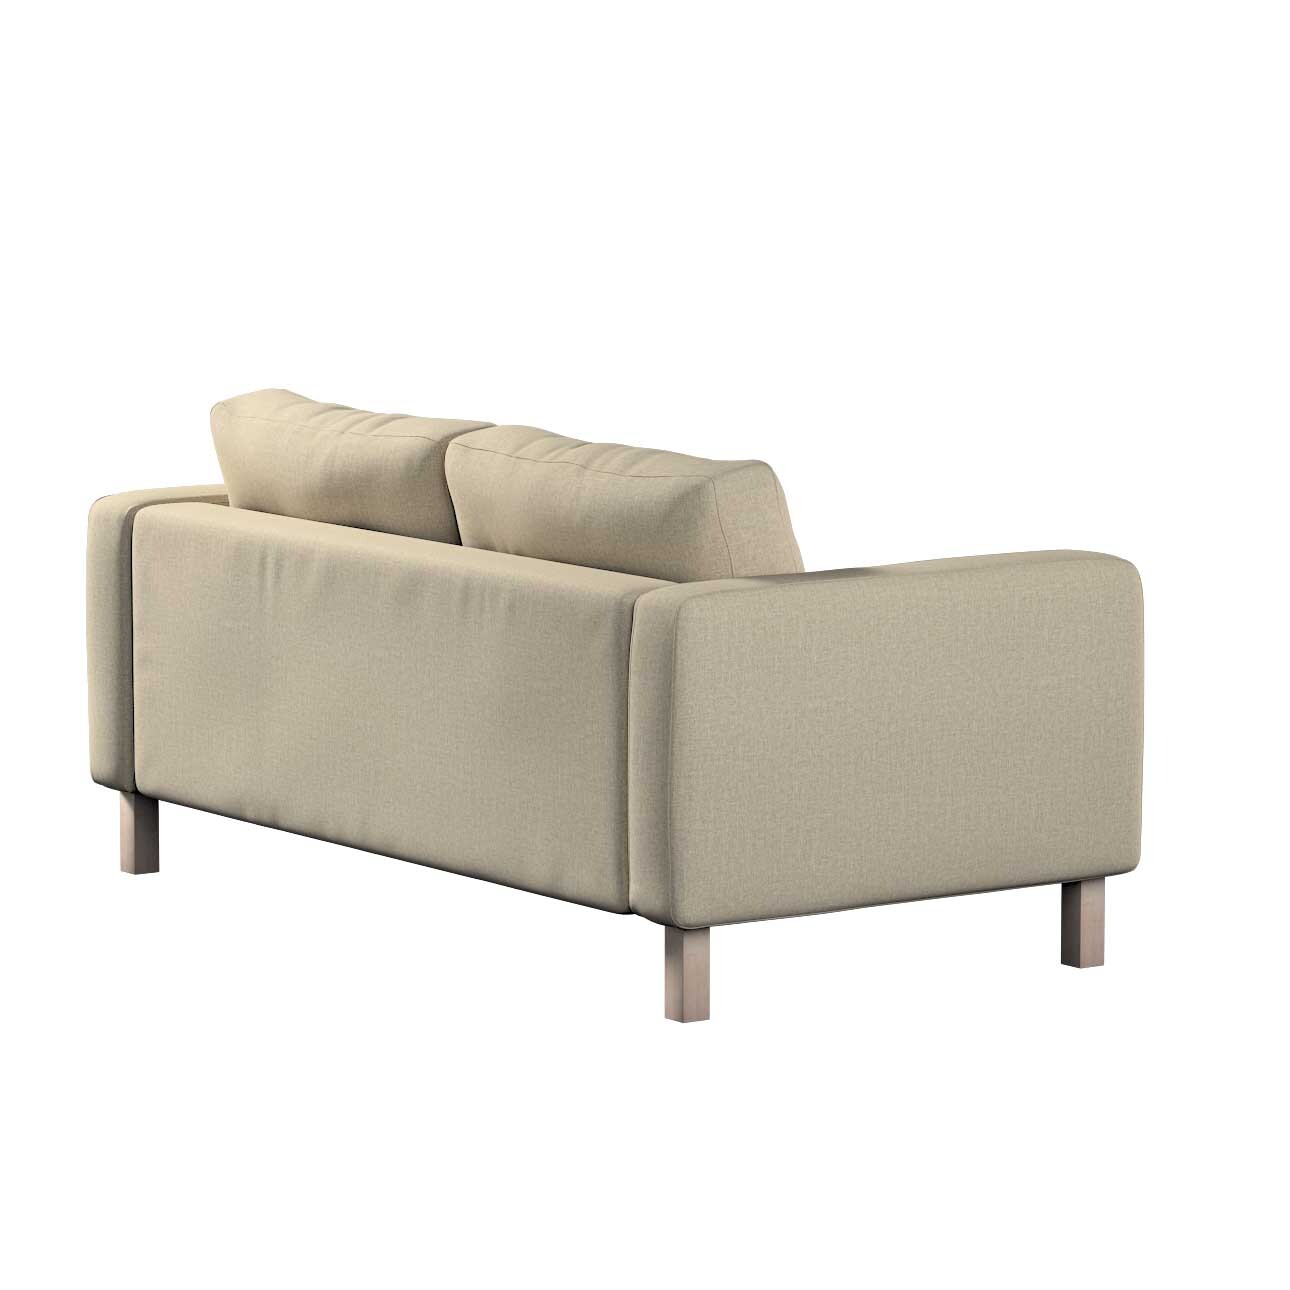 Bezug für Karlstad 2-Sitzer Sofa nicht ausklappbar, beige- grau, Sofahusse, günstig online kaufen